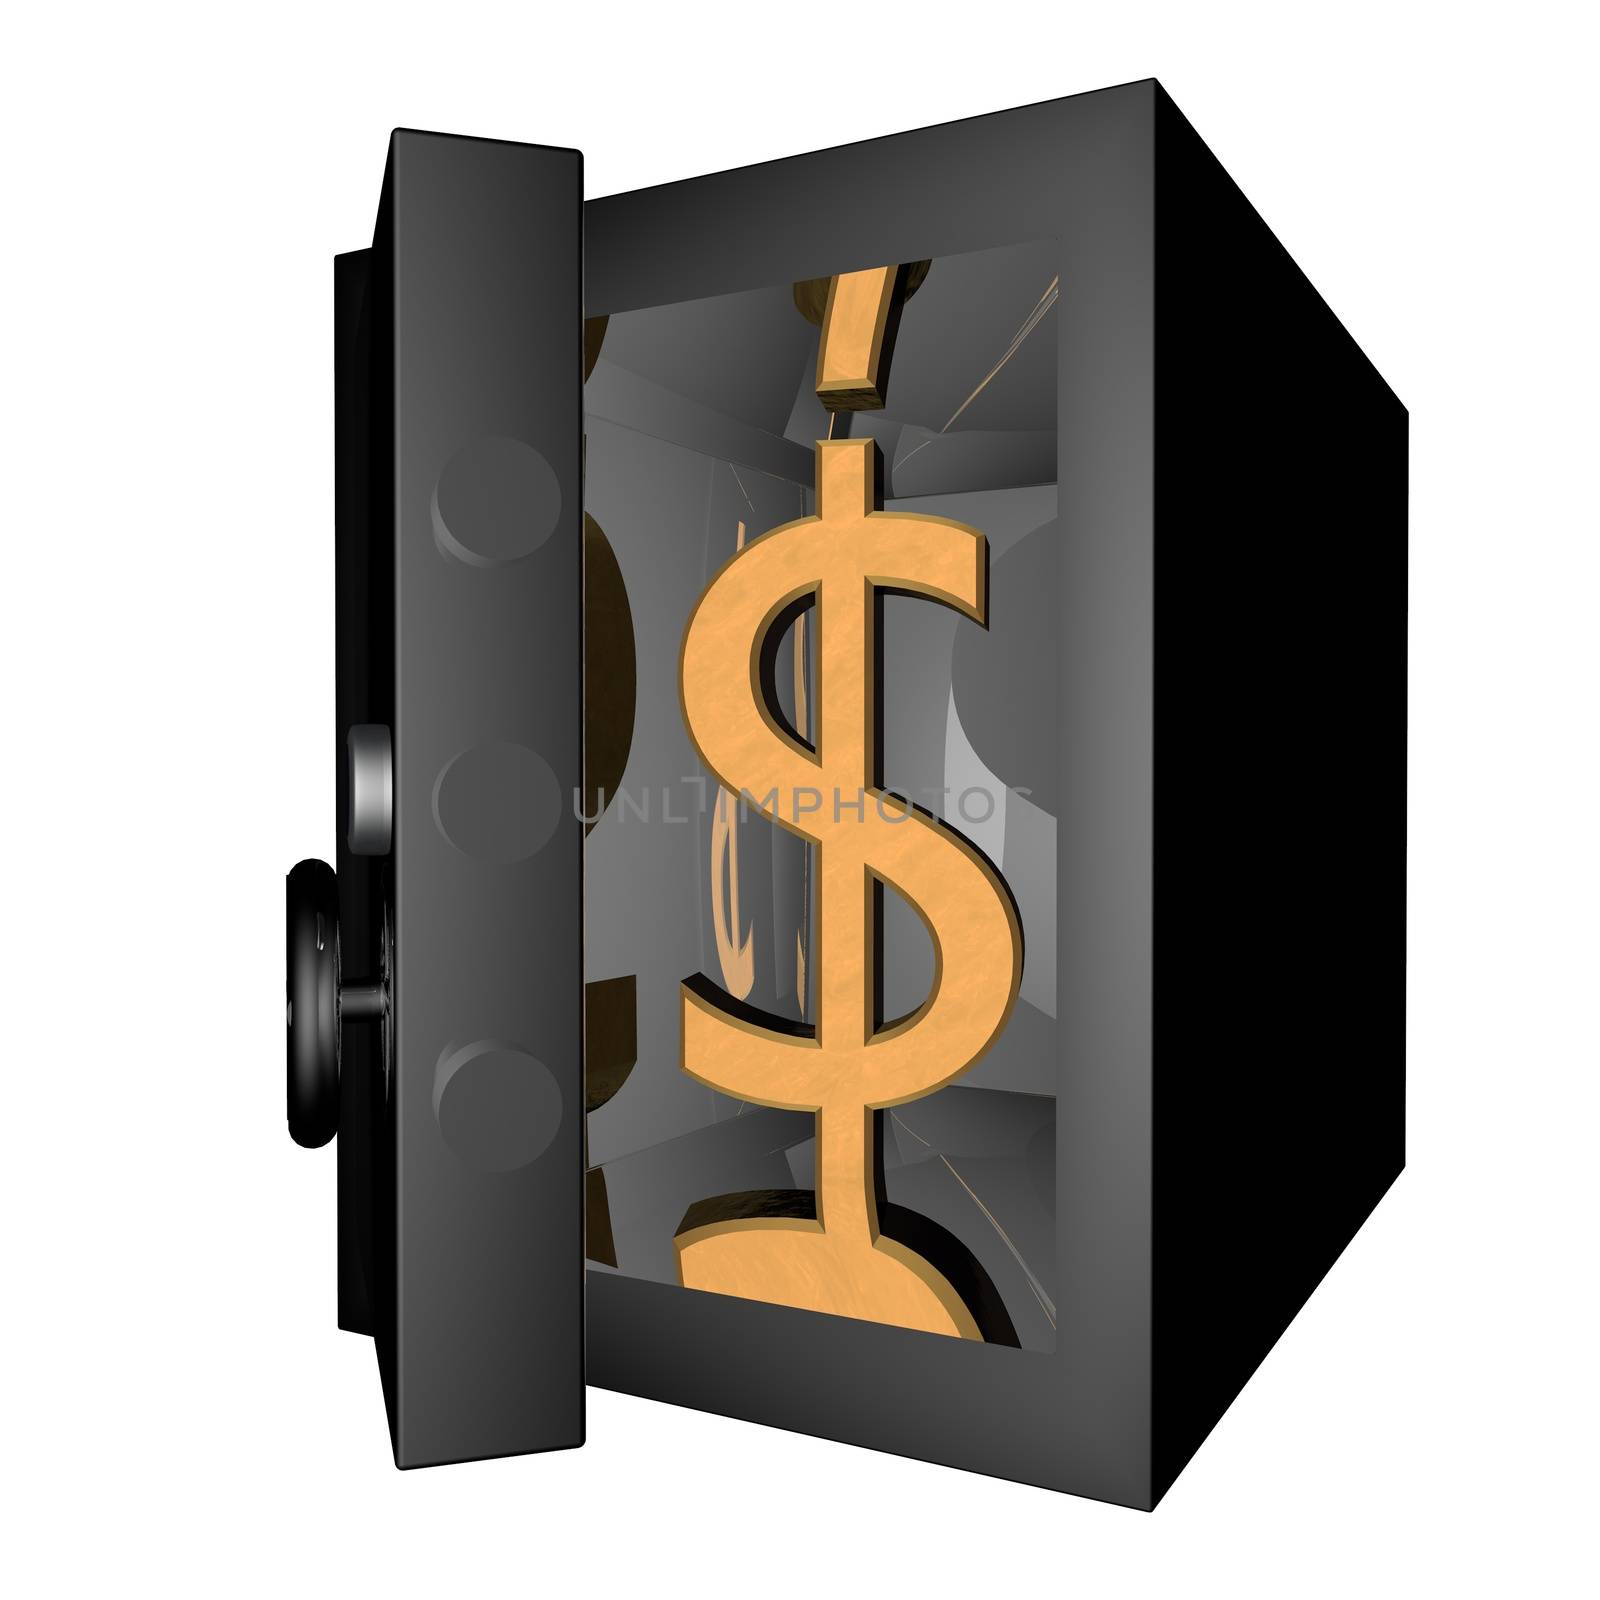 Vault with Dollar symbol inside, 3d render